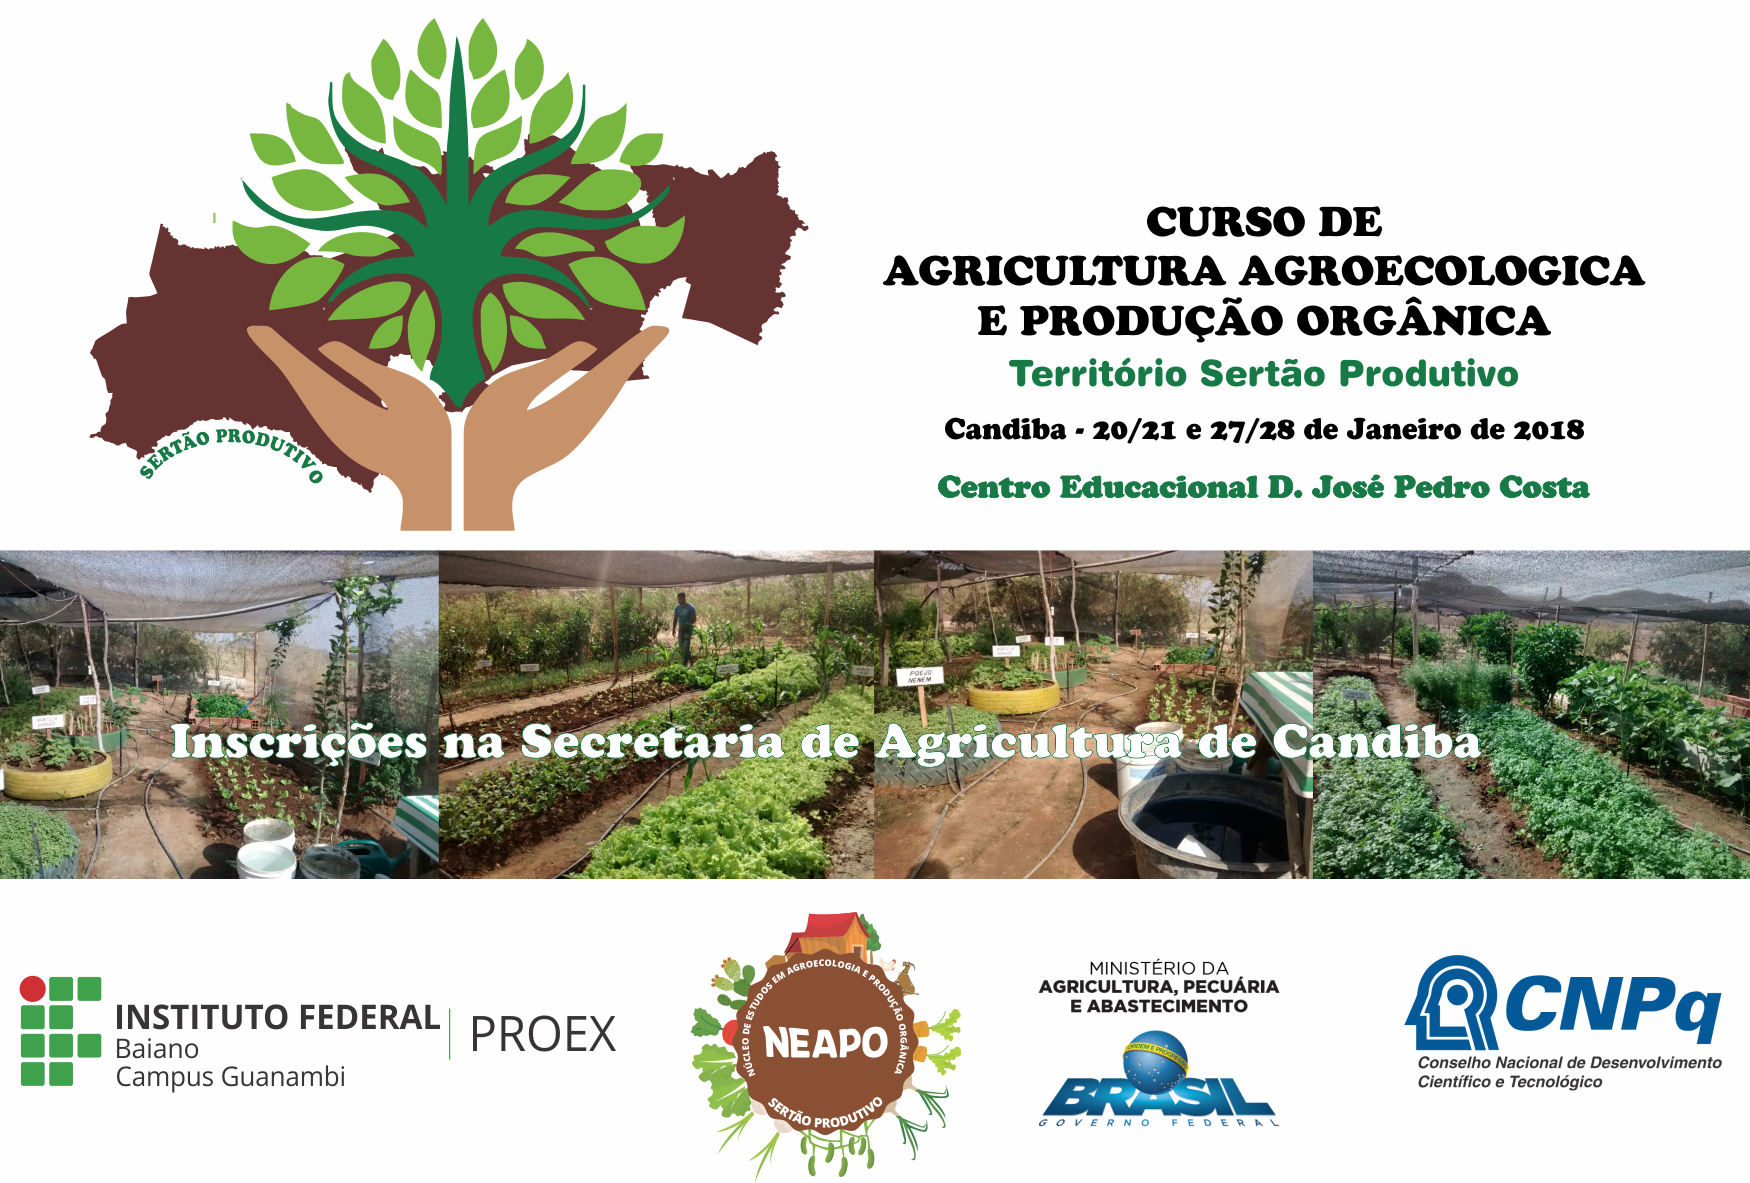 Neapo (IF Baiano) realiza curso de Agroecologia e Produção Orgânica em Candiba